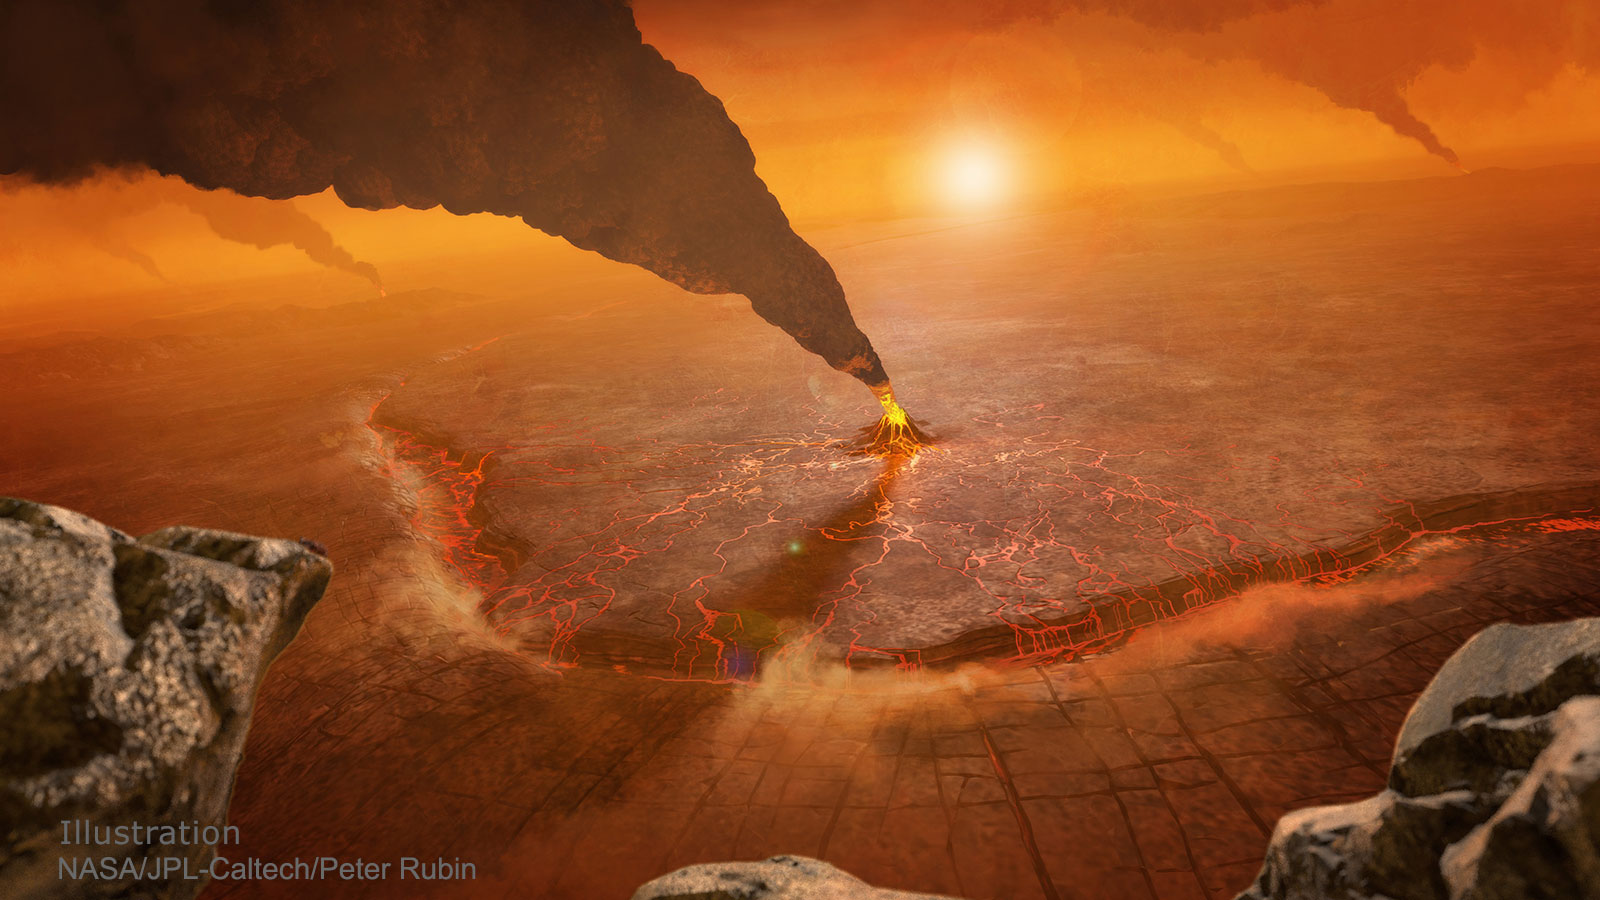 Vulkaanuitbarsting van planeet Venus